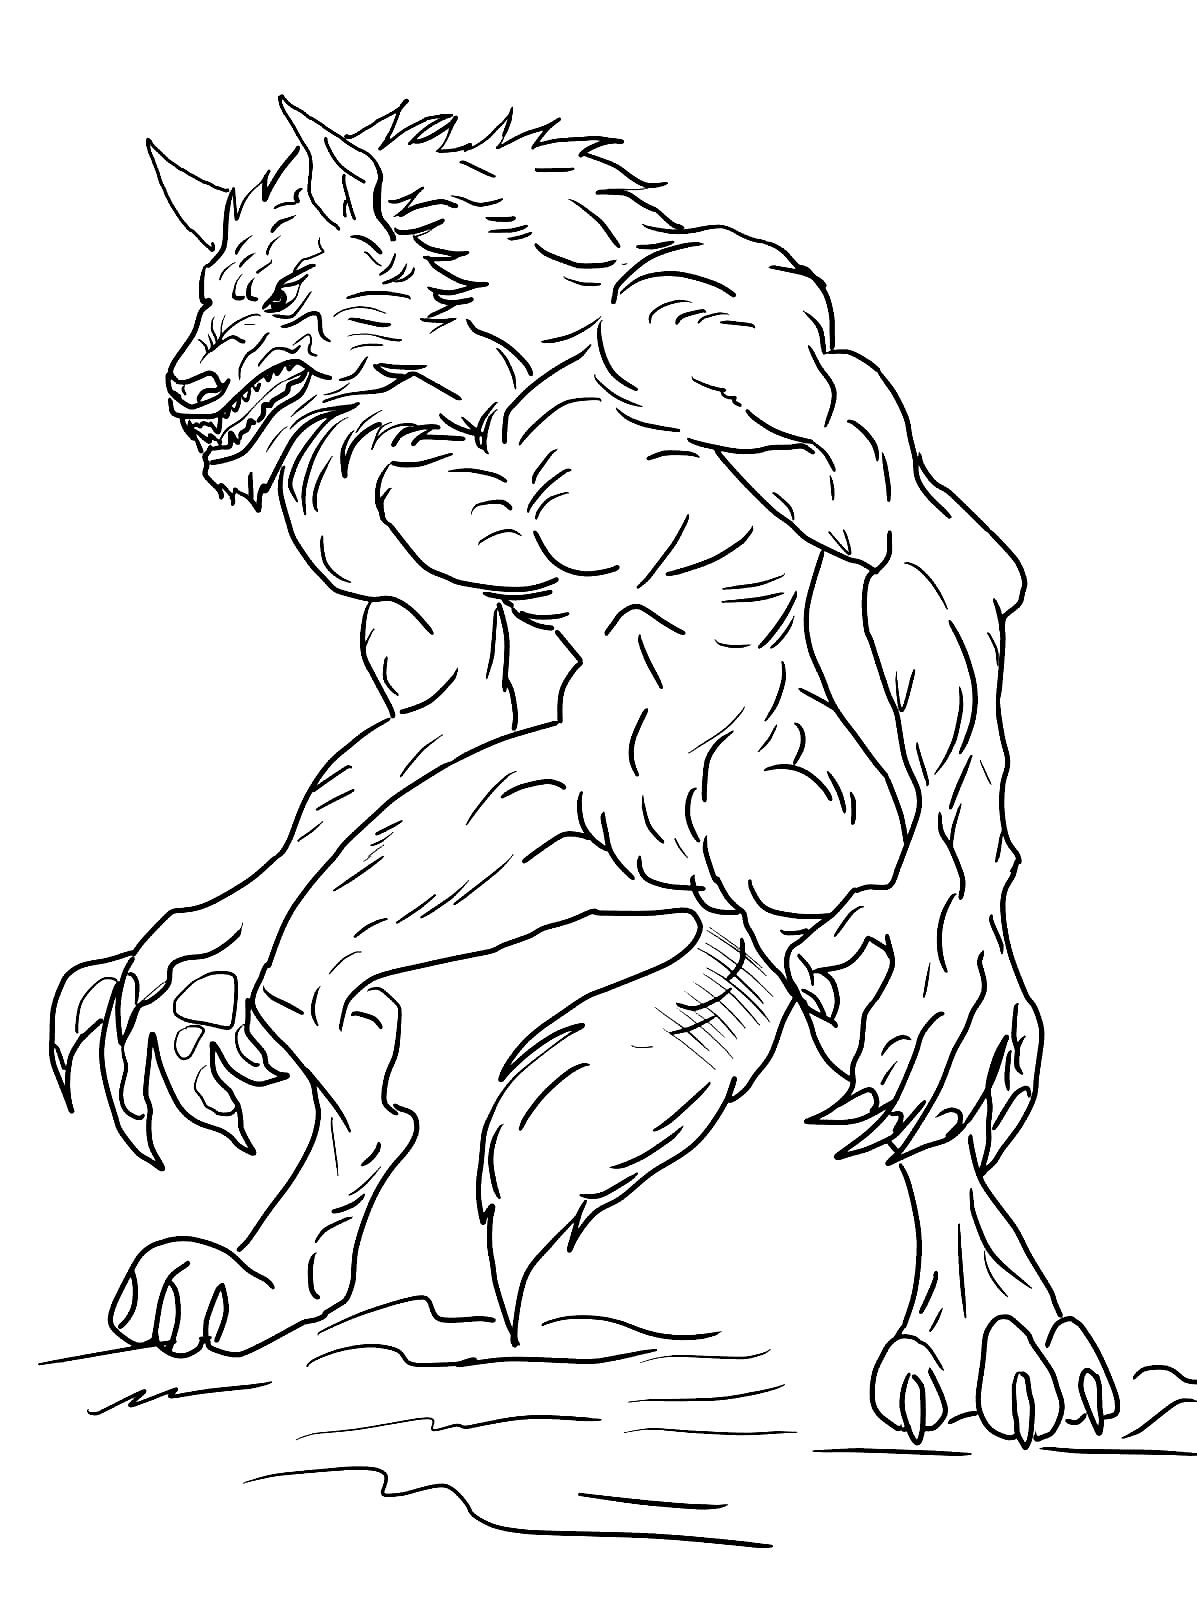 Página para colorear de hombre lobo aterrador gratis